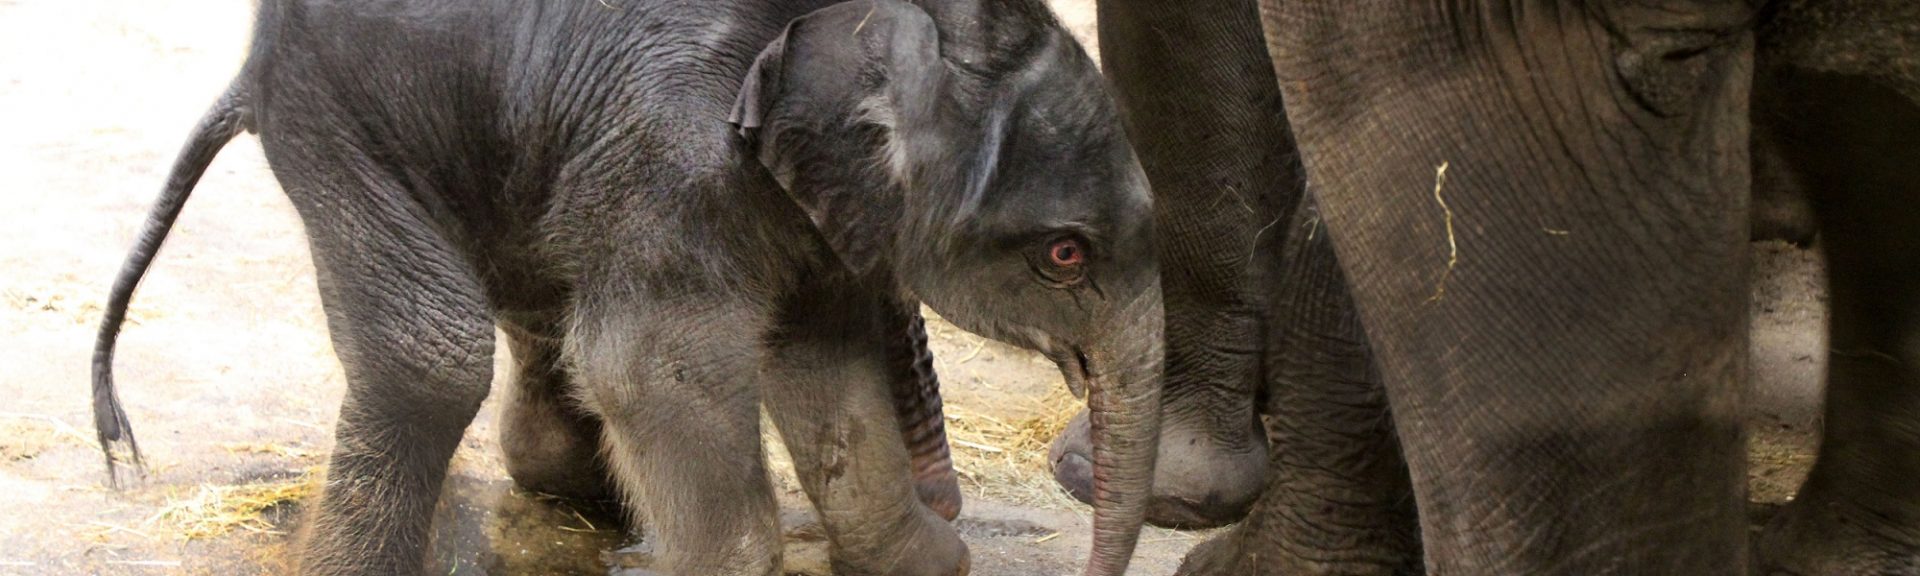 Pasgeboren olifantje